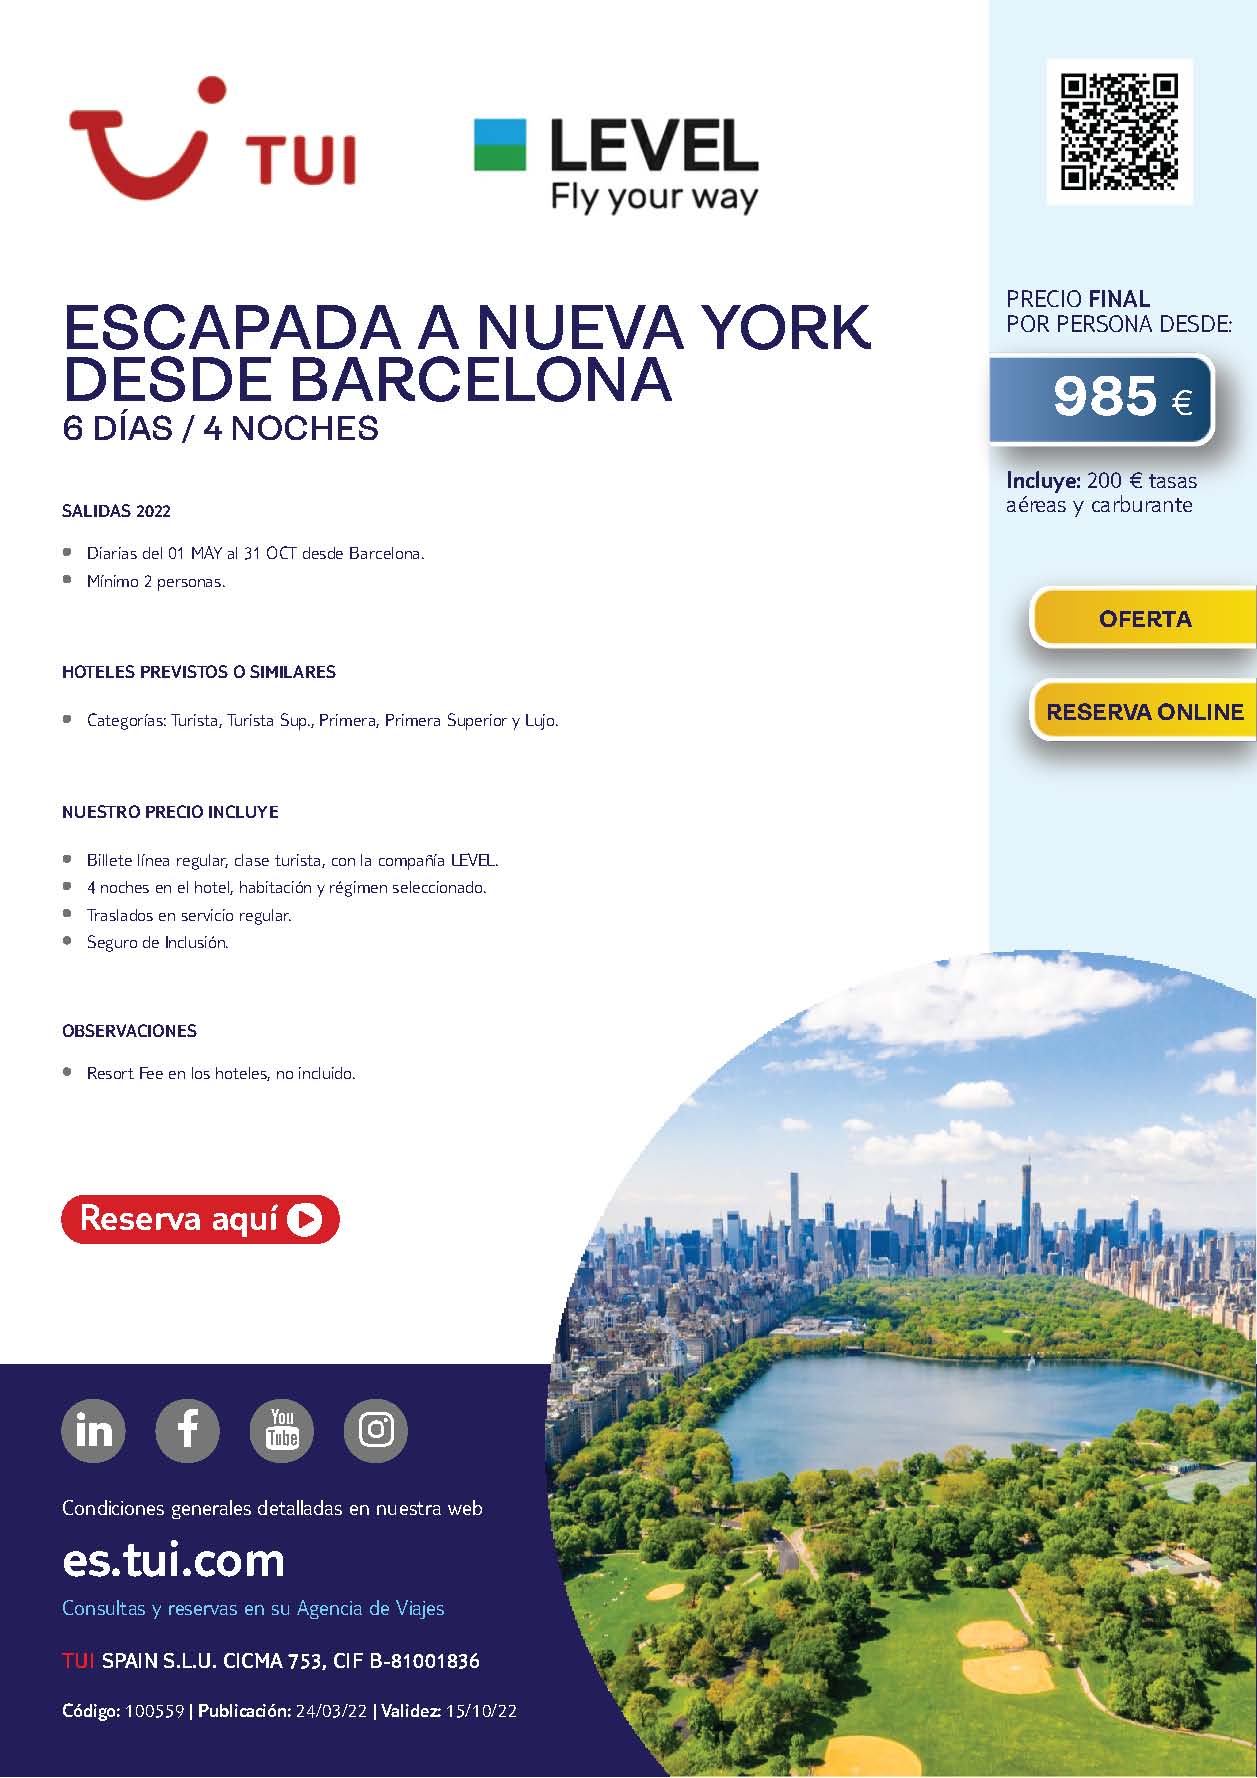 Oferta TUI Estados Unidos Escapada a Nueva York 6 dias Mayo a Octubre 2022 salida en vuelo directo desde Barcelona vuelos Level